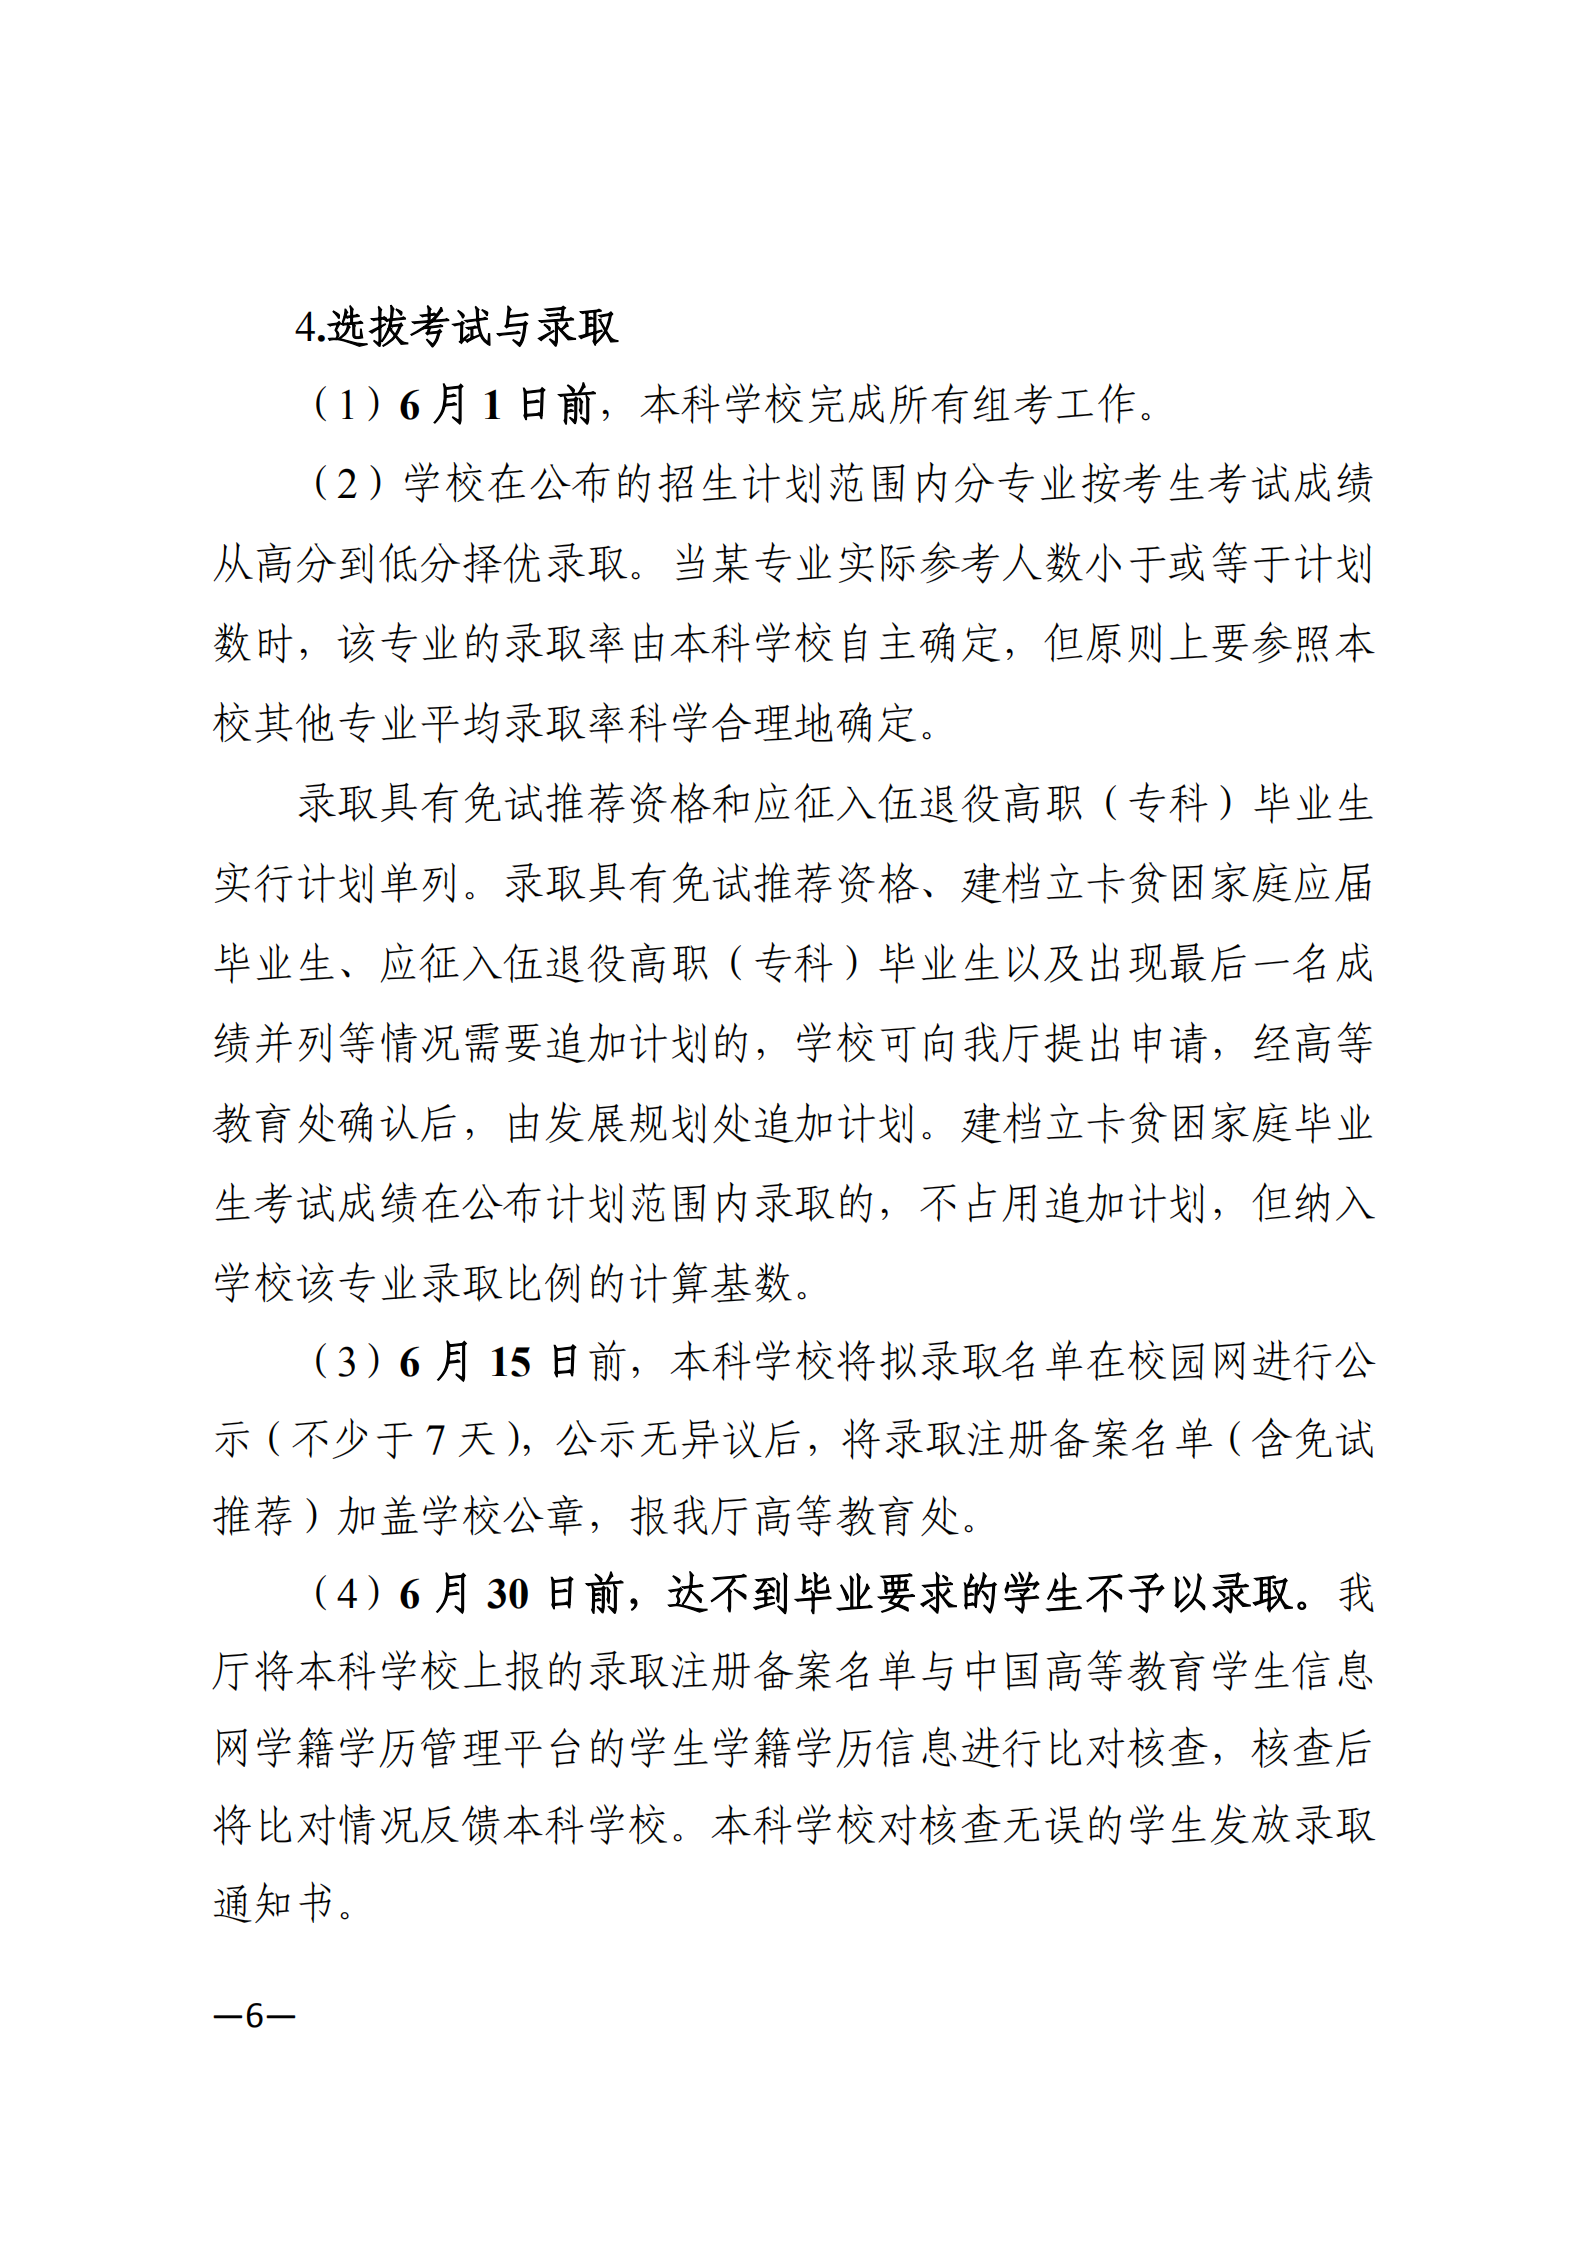 3_湘教发〔2021〕2号 关于印发《2021年湖南省普通高等教育“专升本”考试招生工作实施方案》的通知_05.png